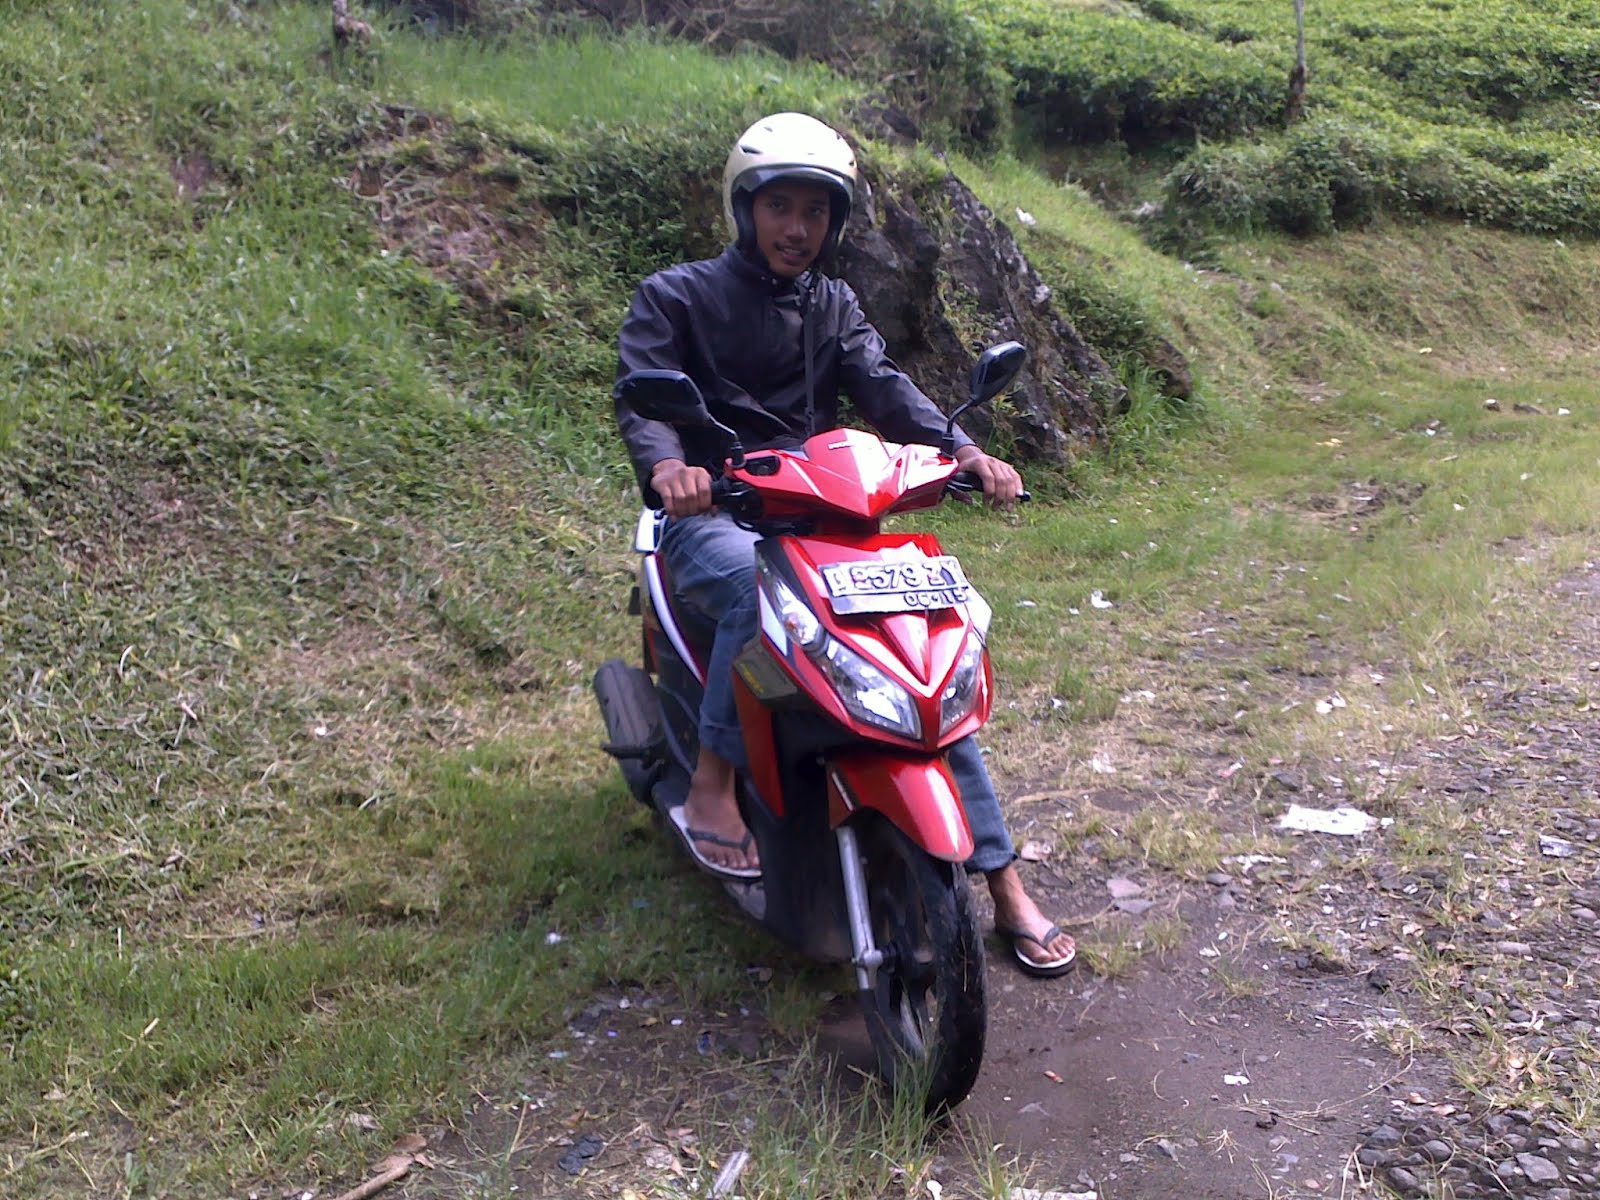 Keliling Bandung dengan Rental Motor